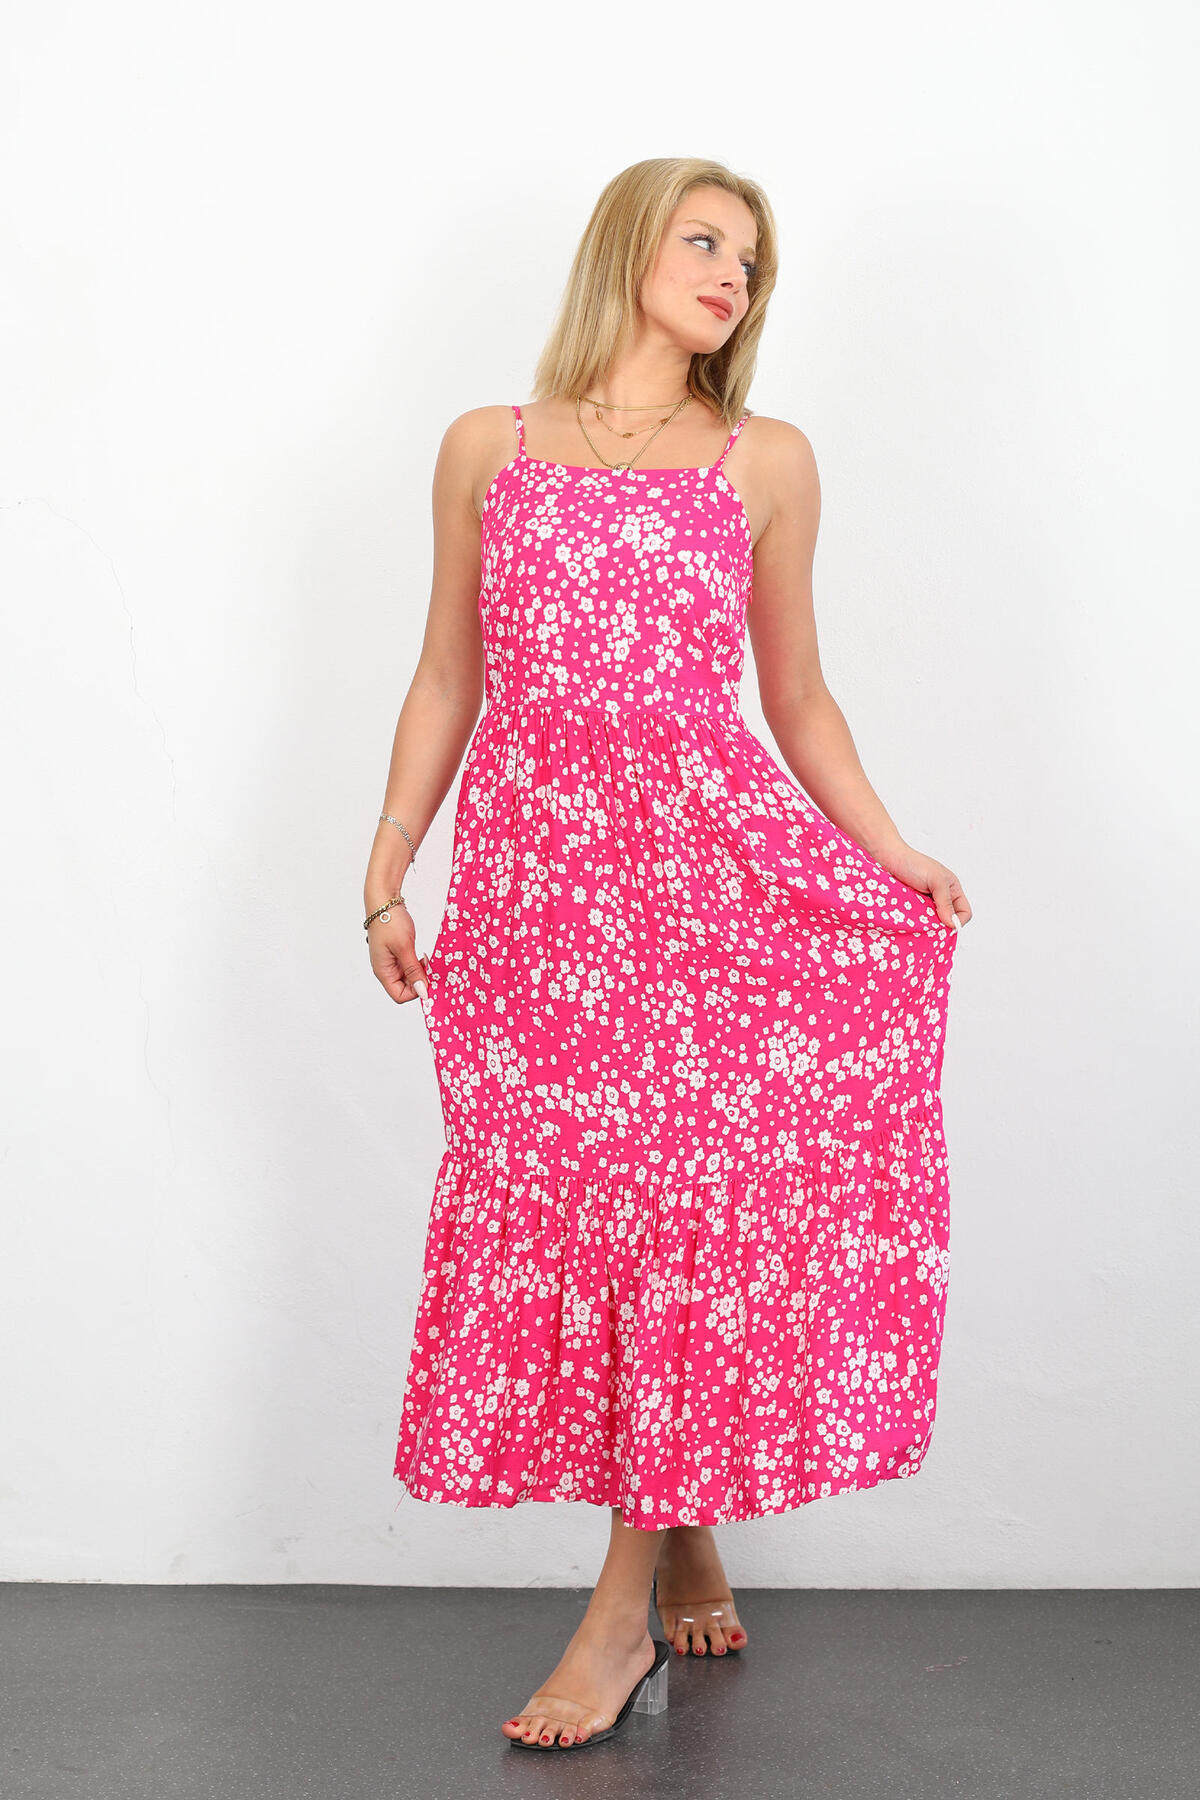 Berox - Askılı Çiçek Desenli Parçalı Midi Pembe Kadın Elbise